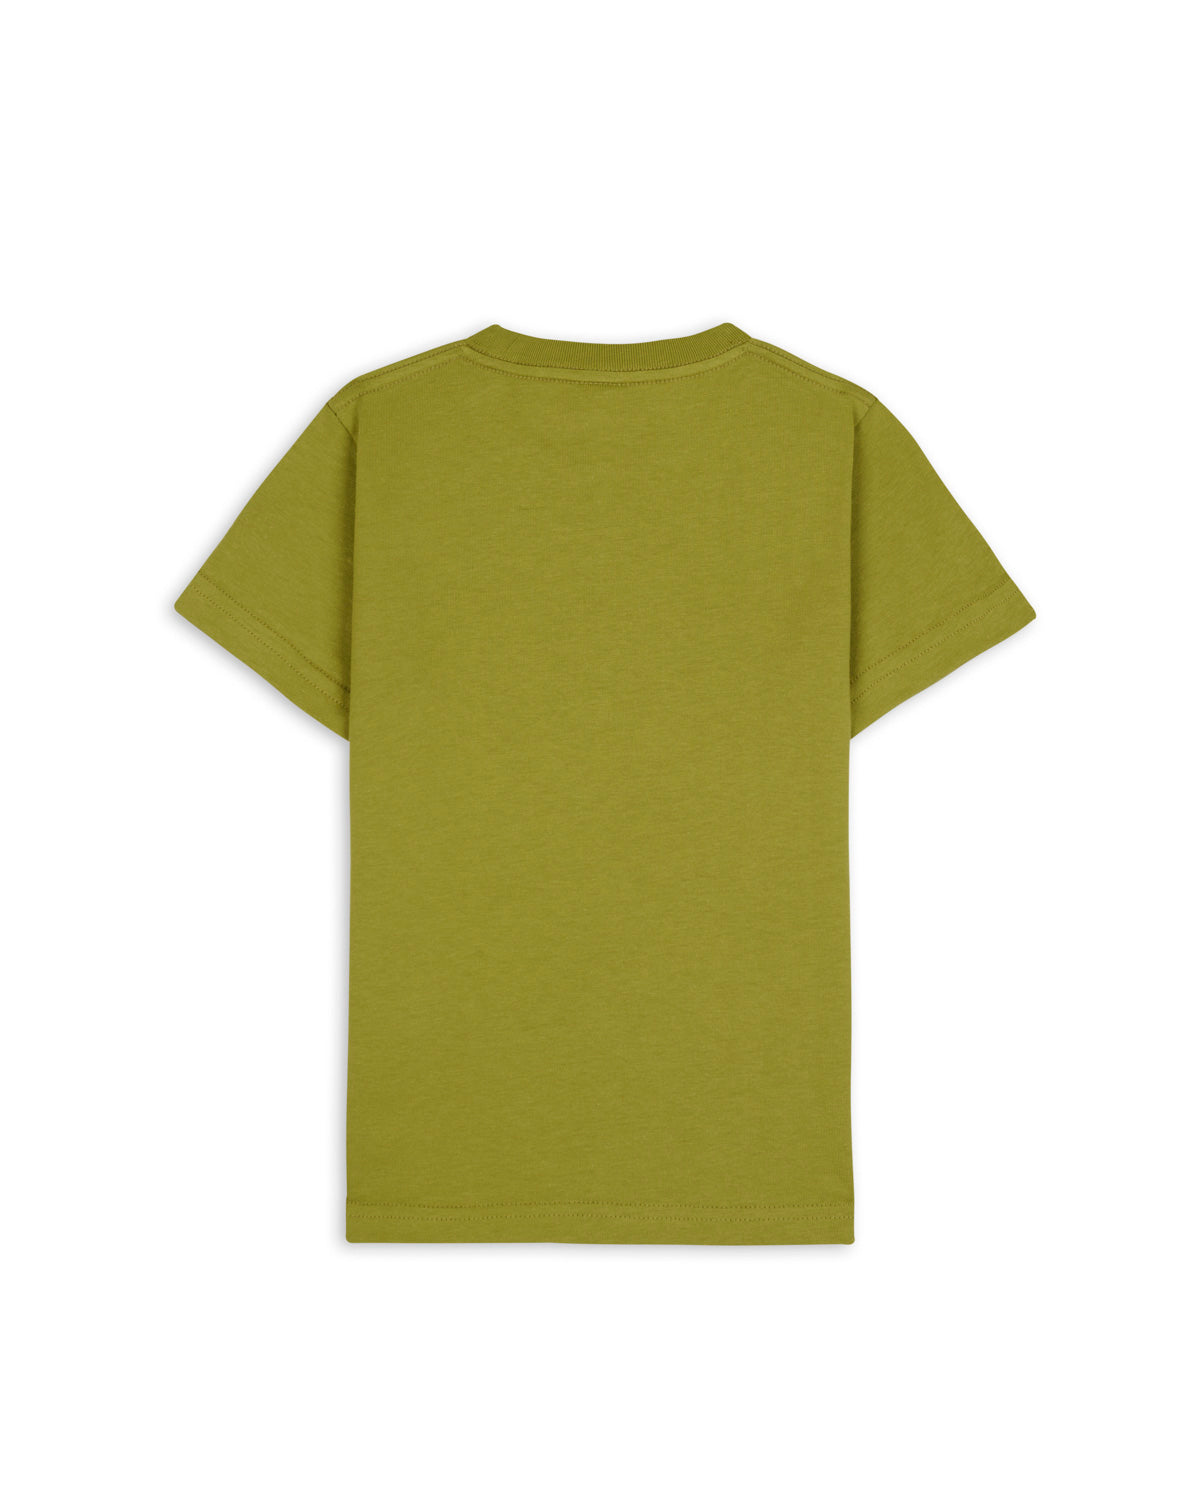 Creeper Kids T-Shirt - Moss 2